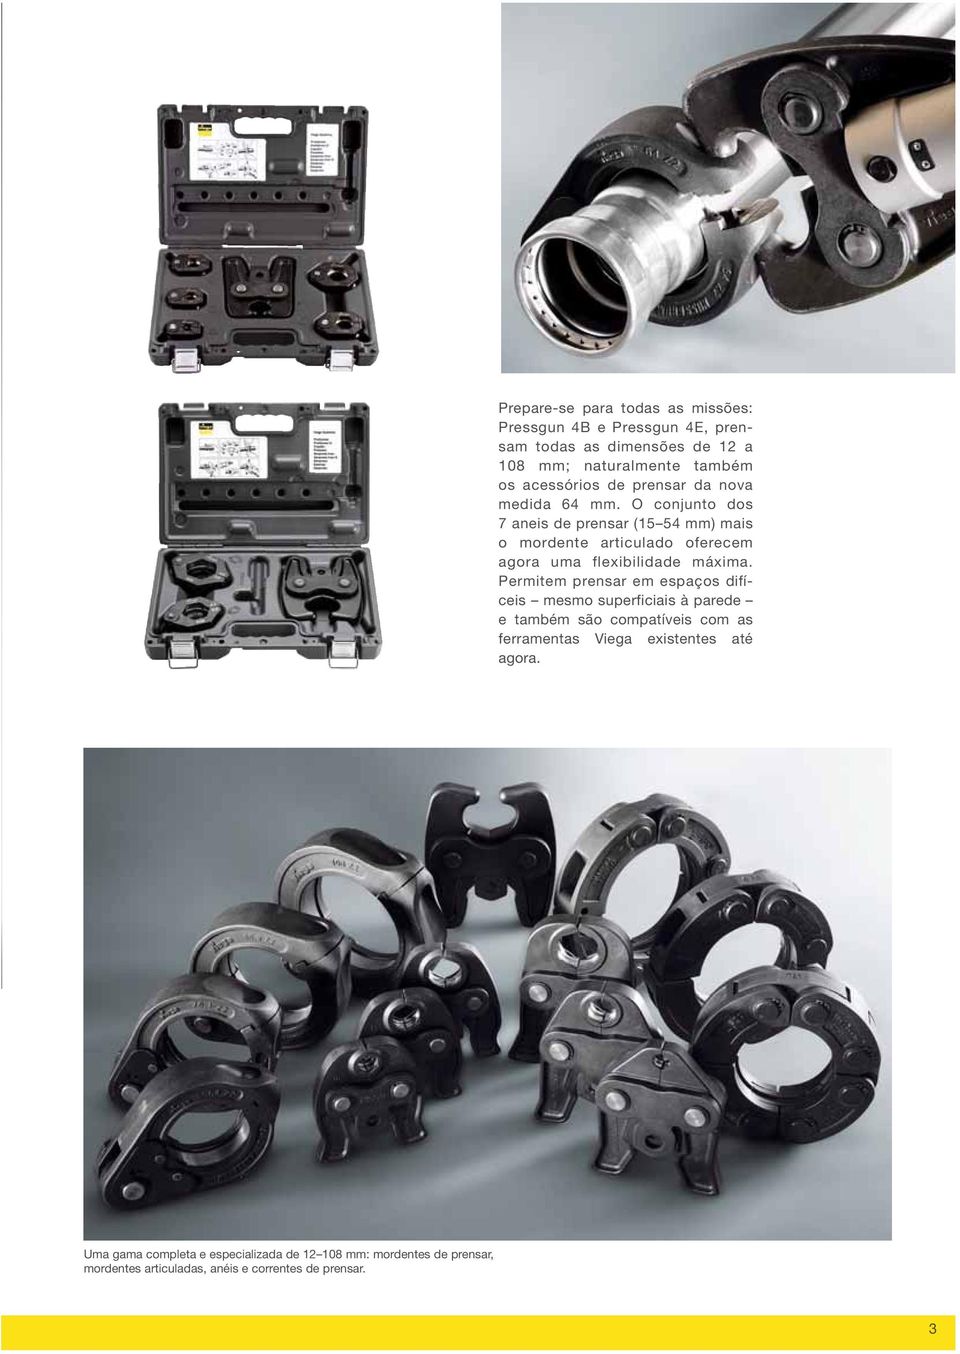 O conjunto dos 7 aneis de prensar (15 54 mm) mais o mordente articulado oferecem agora uma flexibilidade máxima.